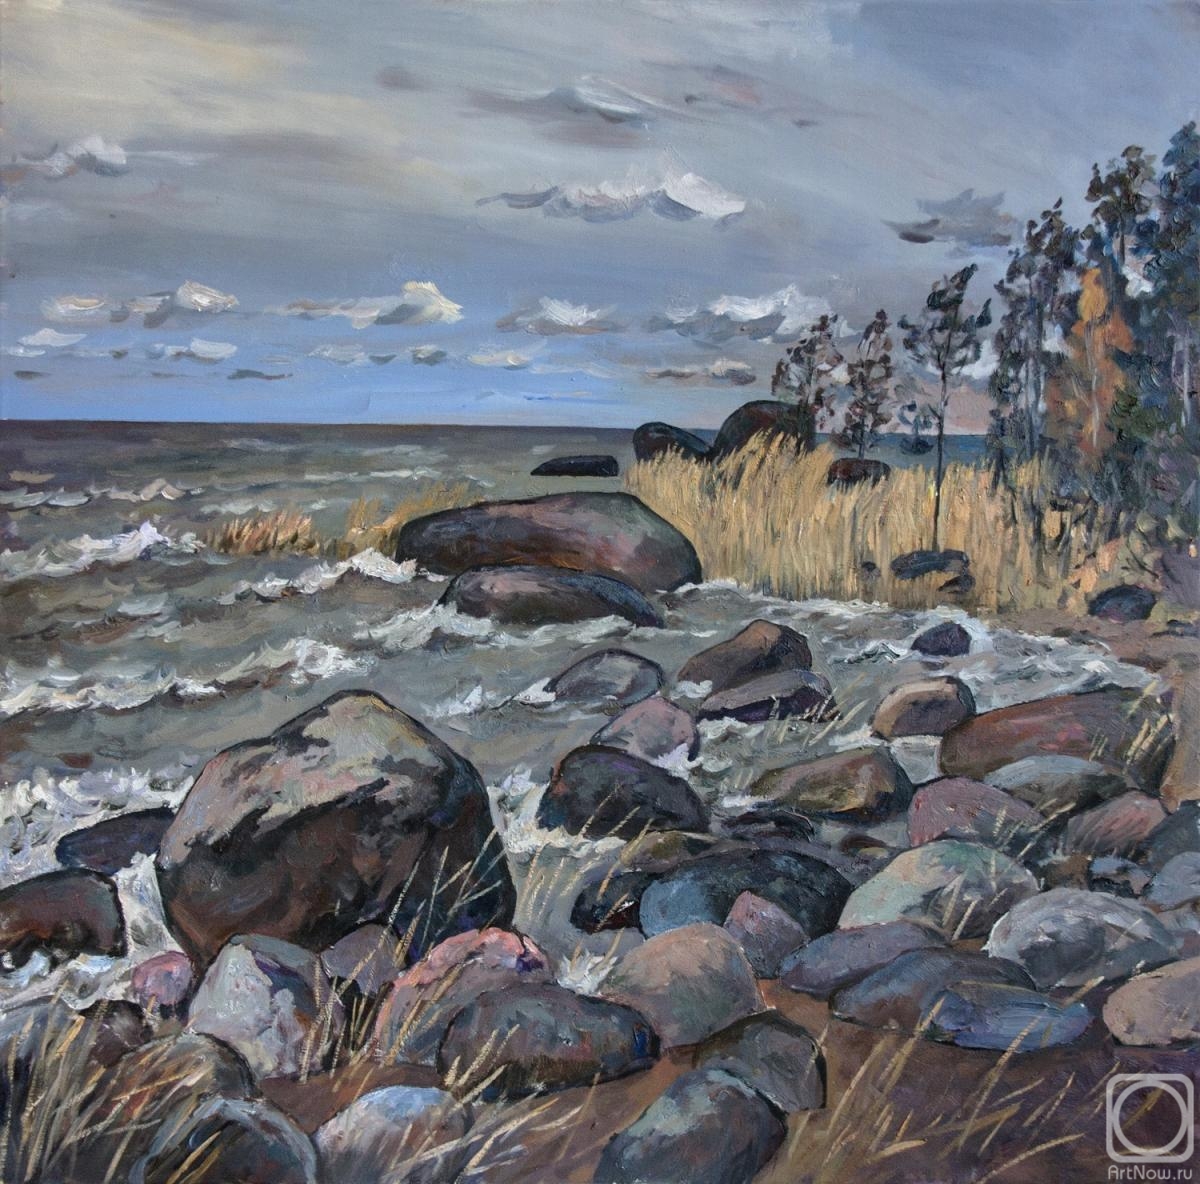 Rumiyantsev Vadim. Wind on the Gulf of Finland